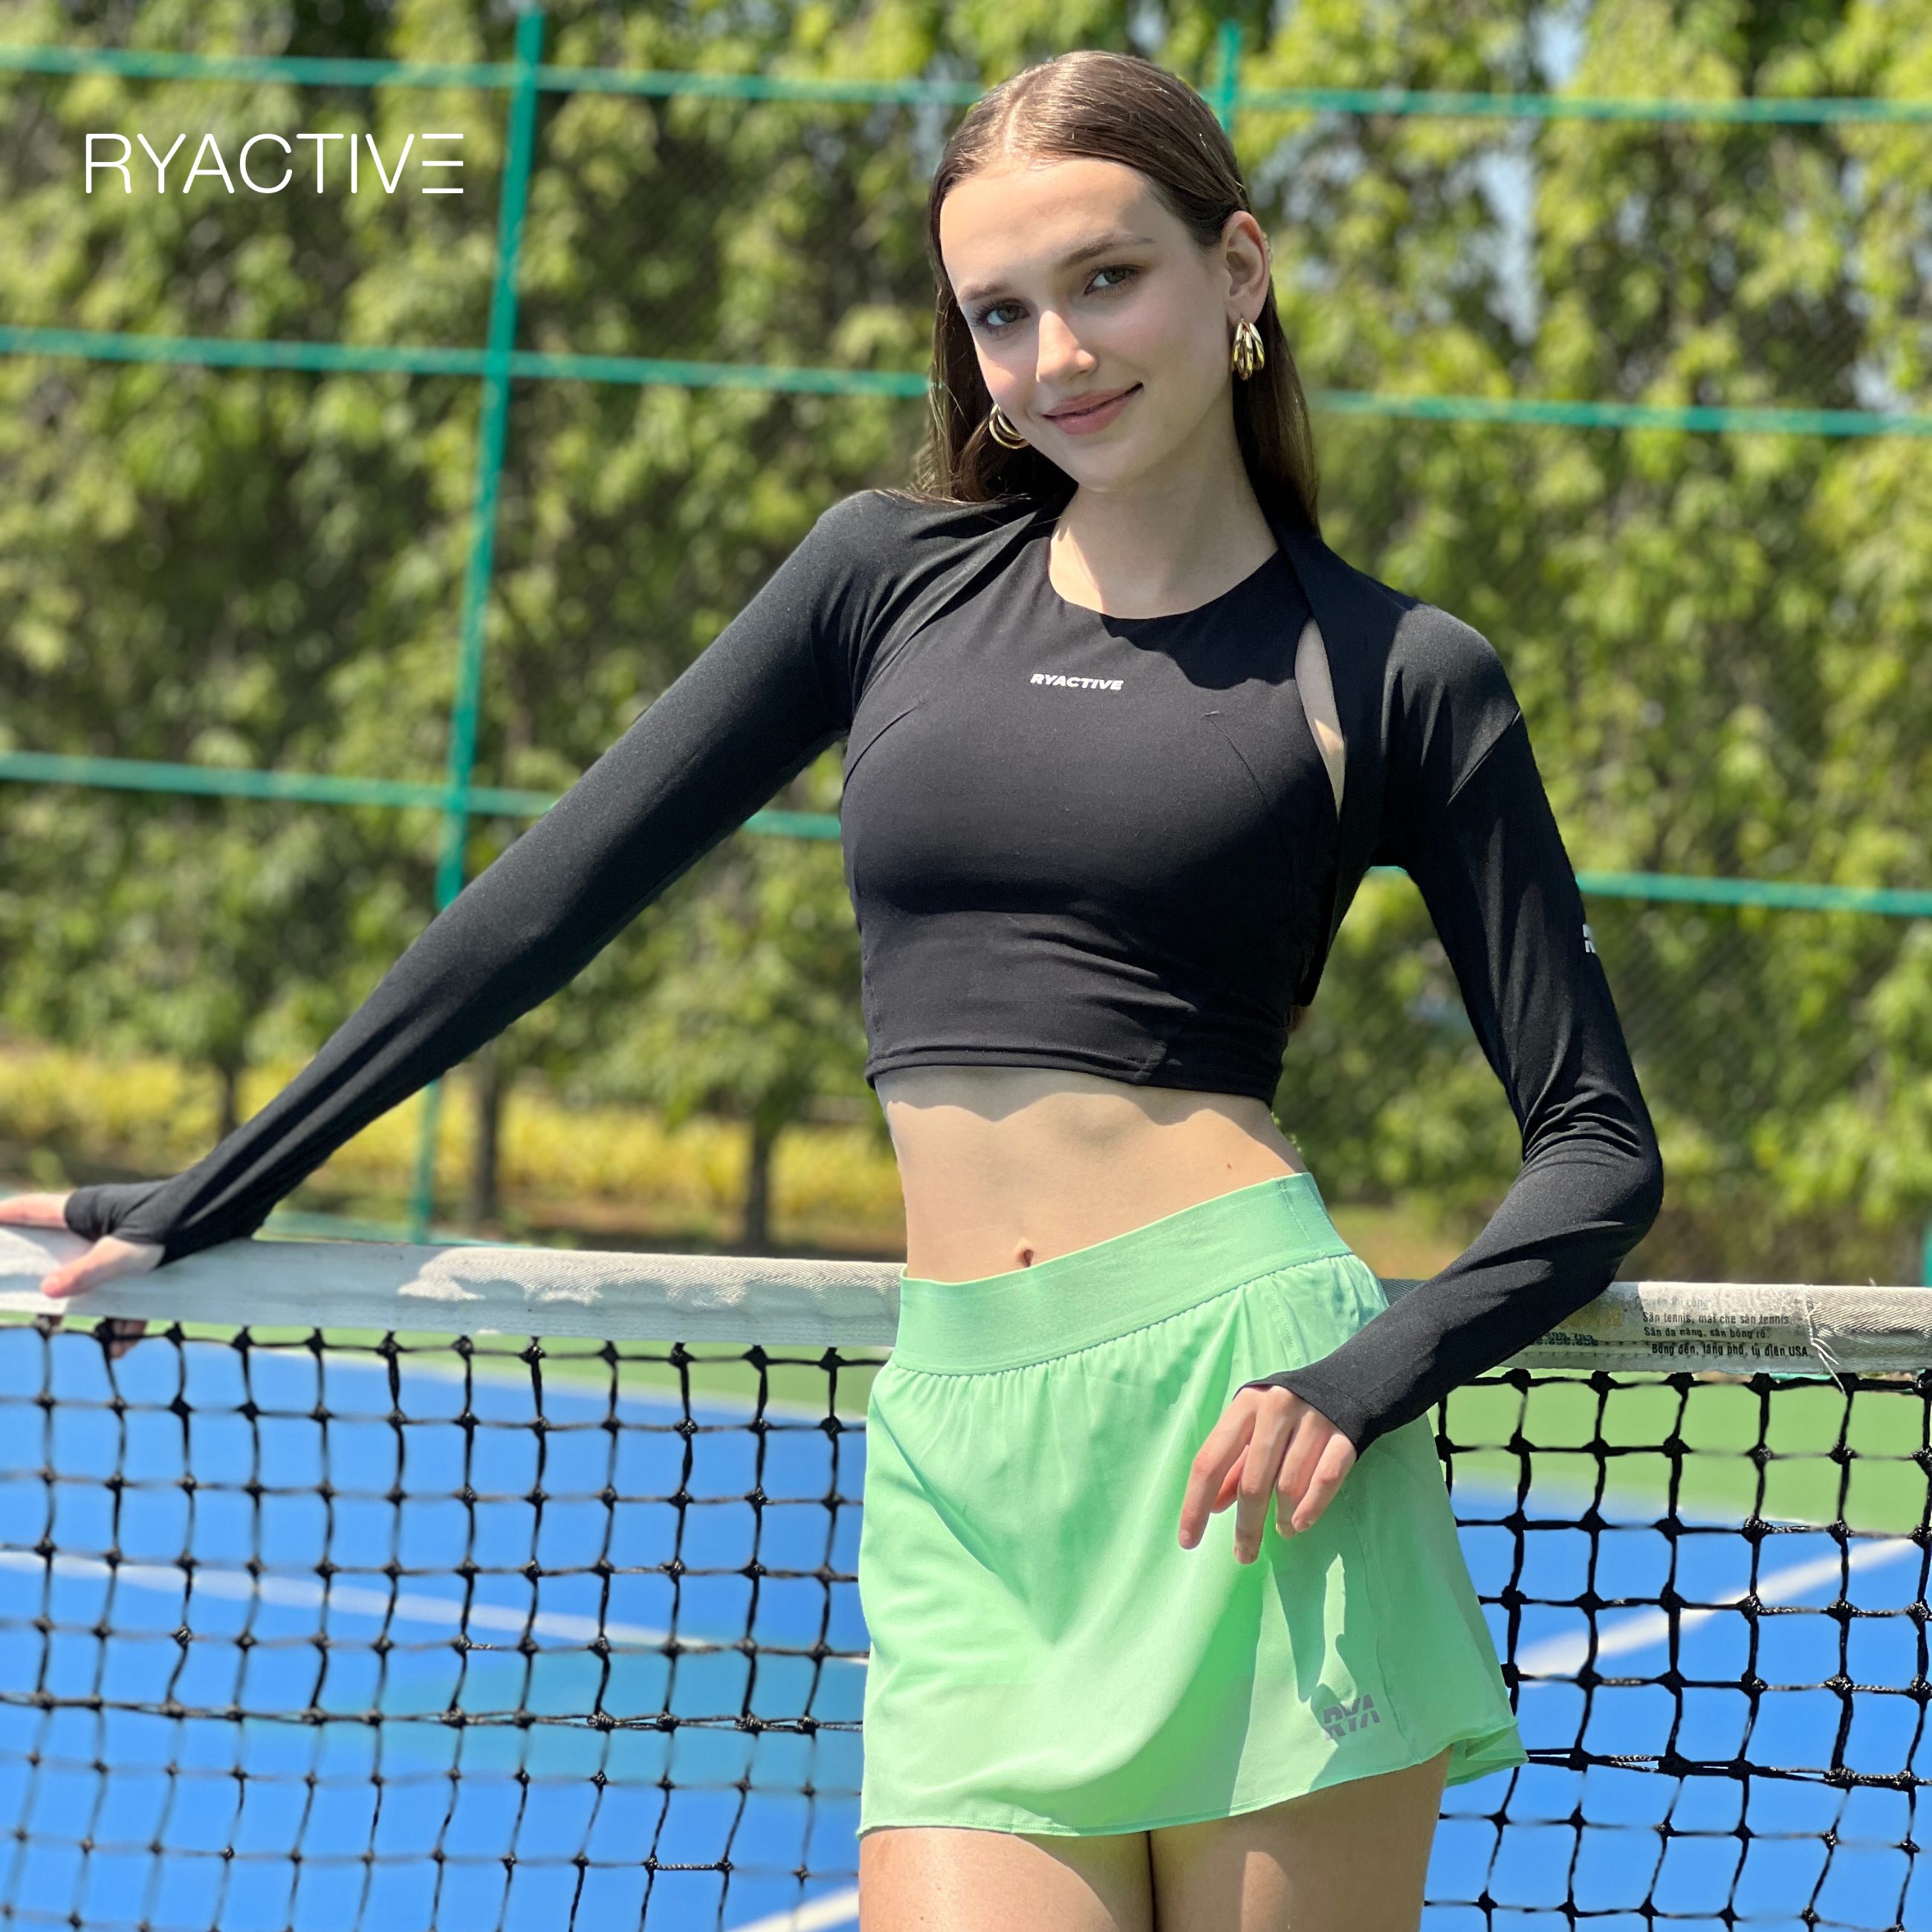 Chân Váy Thể Thao Nữ Váy Tennis Nữ Vải Thun Siêu Đẹp das   Hazomicom   Mua Sắm Trực Tuyến Số 1 Việt Nam